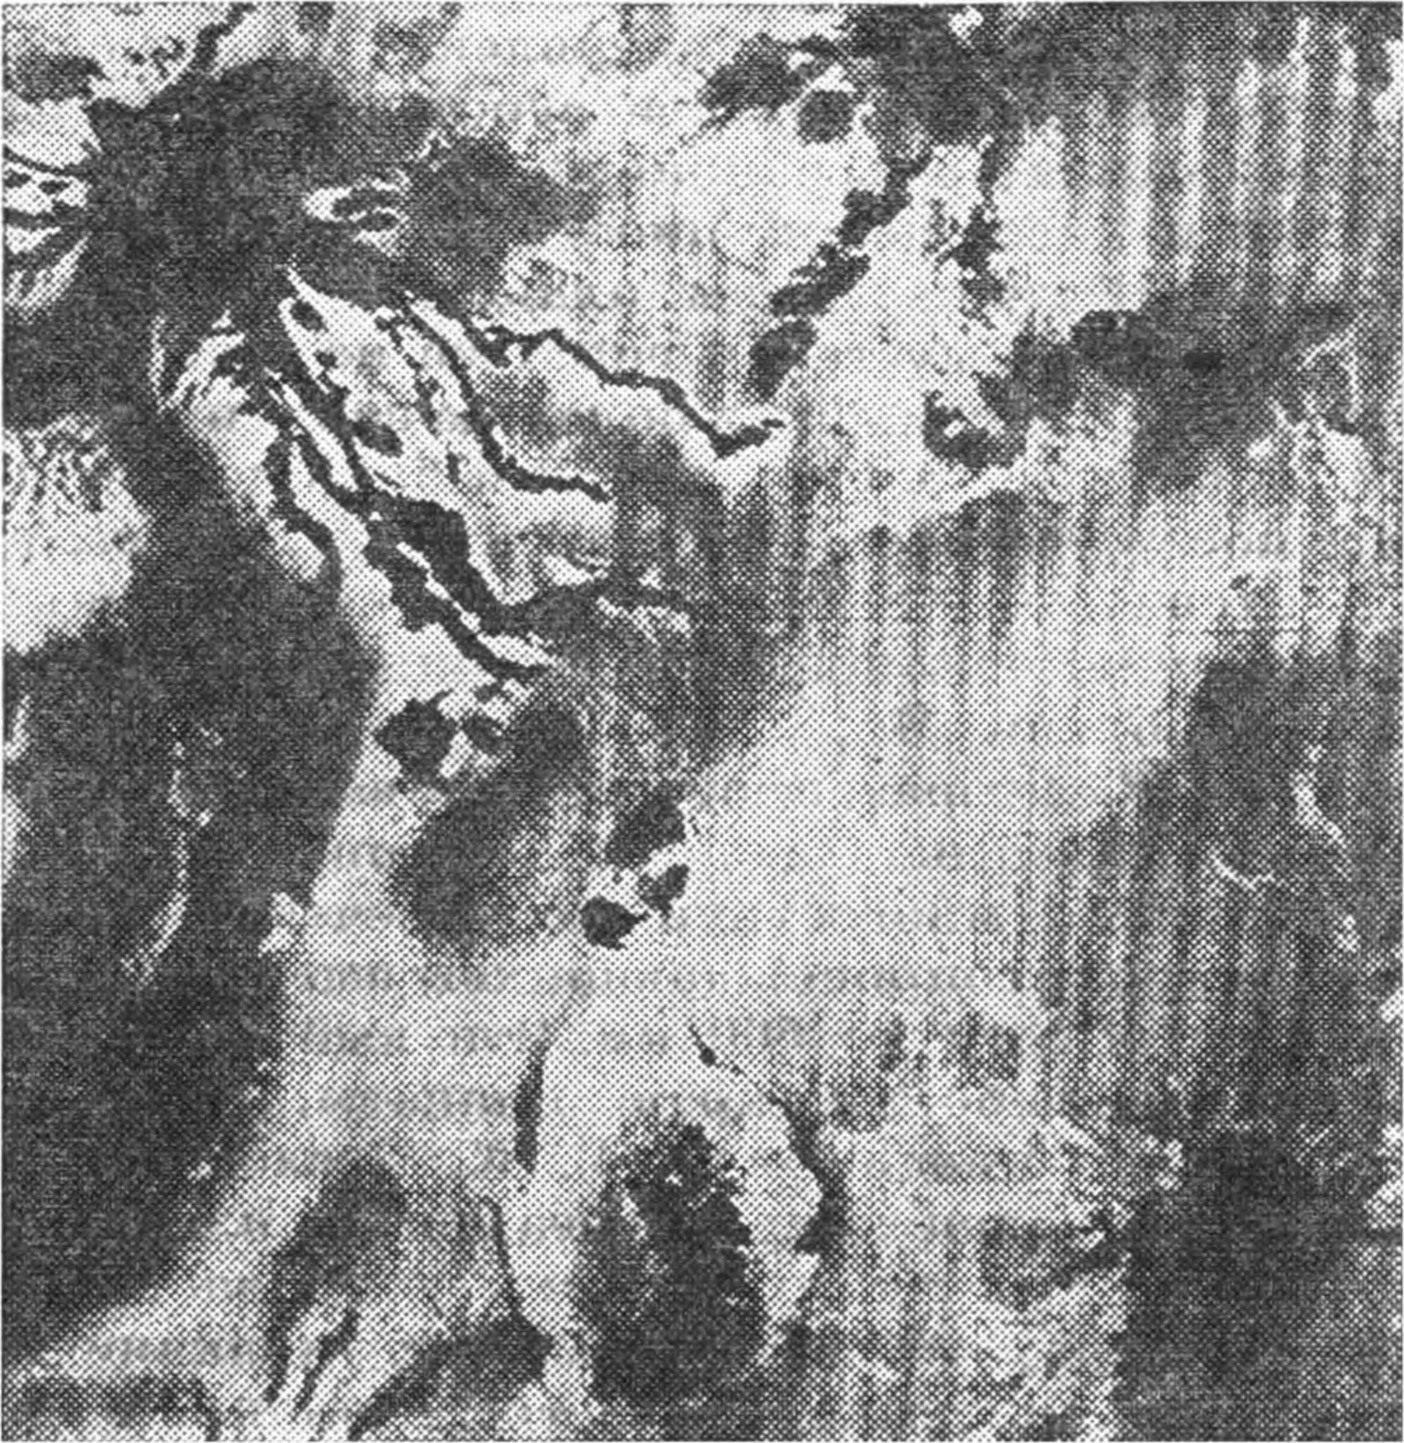 Рис. 88. Эта фотография, полученная с «Вояджера-1», показывает темные потоки лавы из кратера на спутнике Юпитера Ио. Ио окружена обширным облаком газов, растянутых вдоль ее орбиты и, по-видимому, образованных вулканическими извержениями в течение геологических сроков